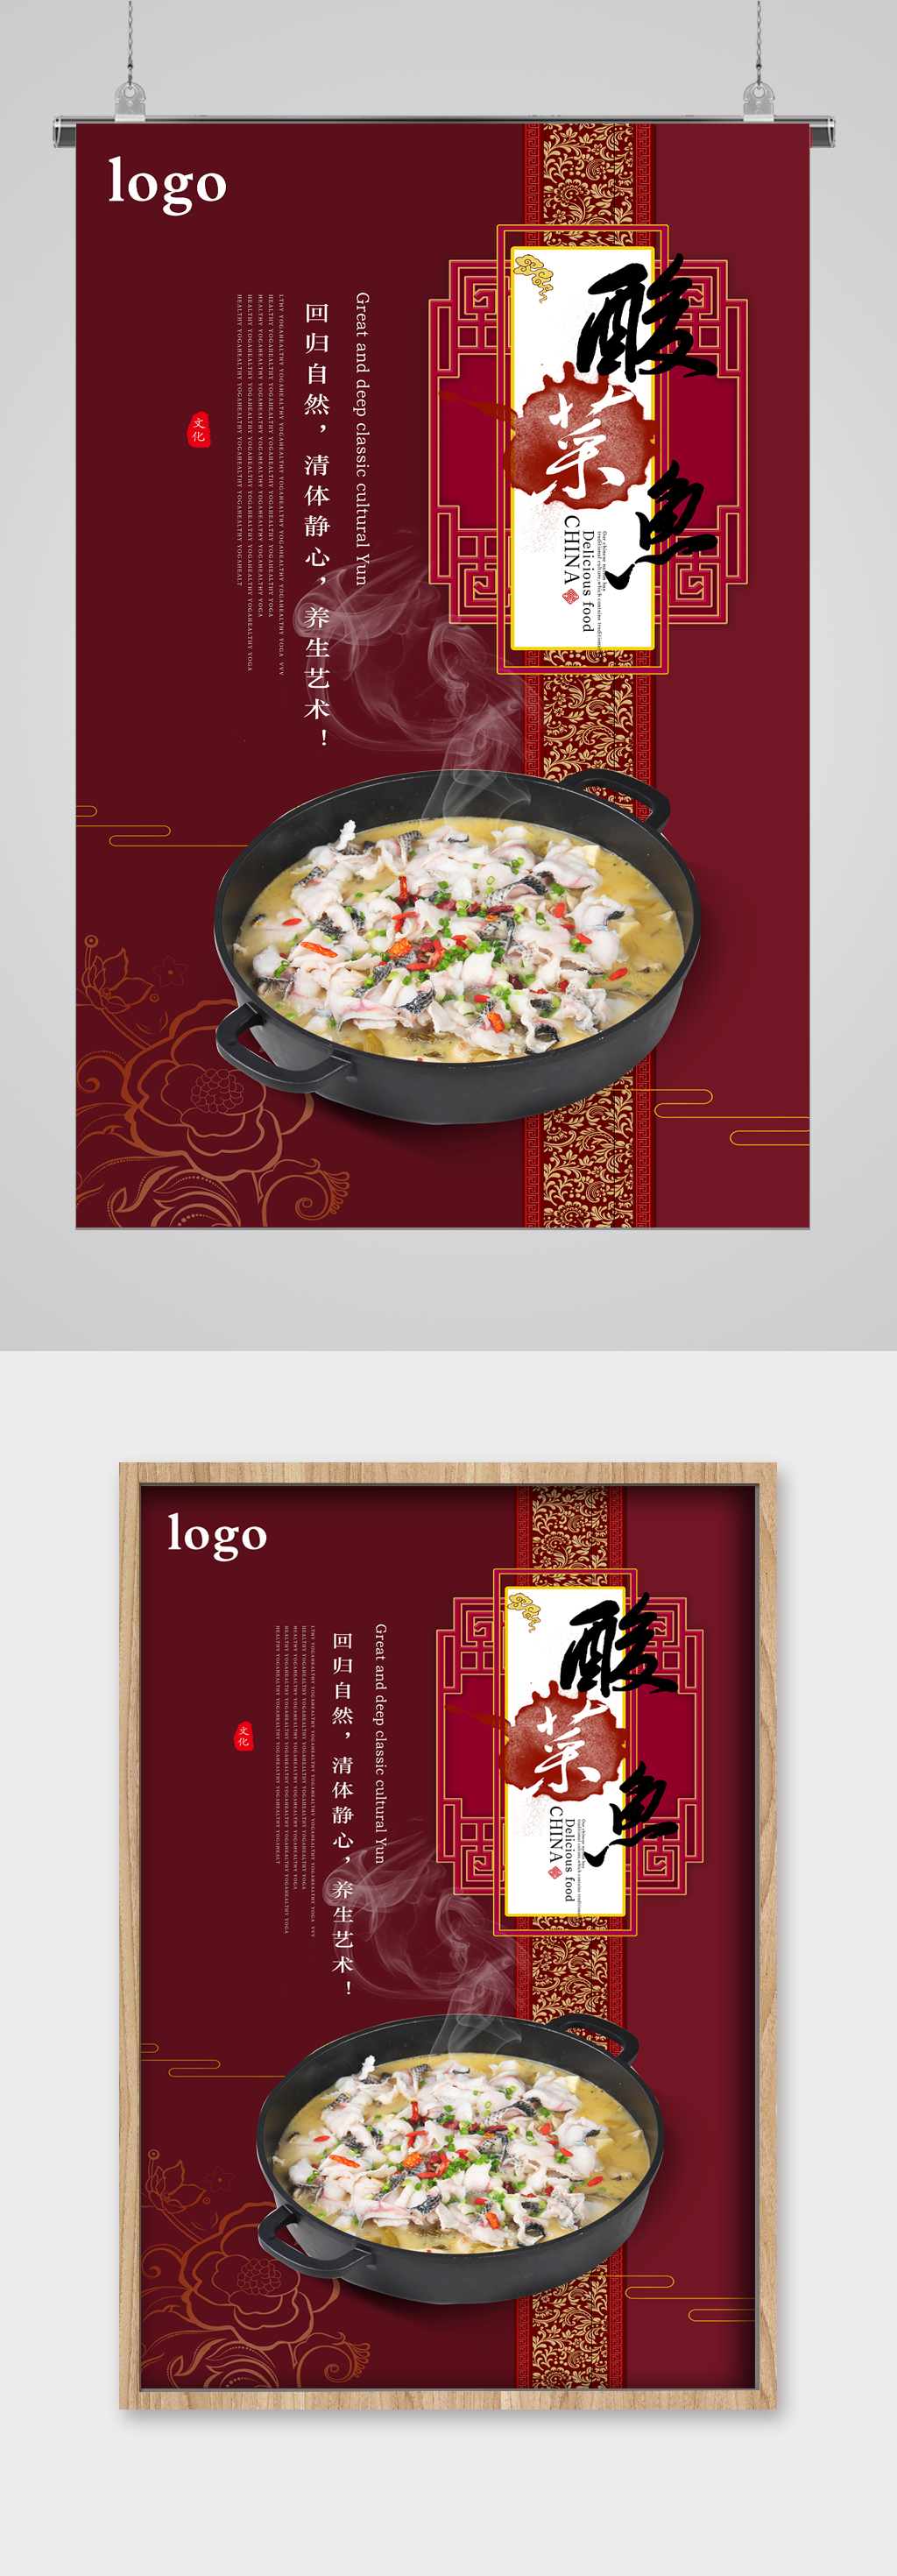 海报新鲜美味砂锅海鲜粥餐饮美食图片立即下载立即下载砂锅卤肉饭美食